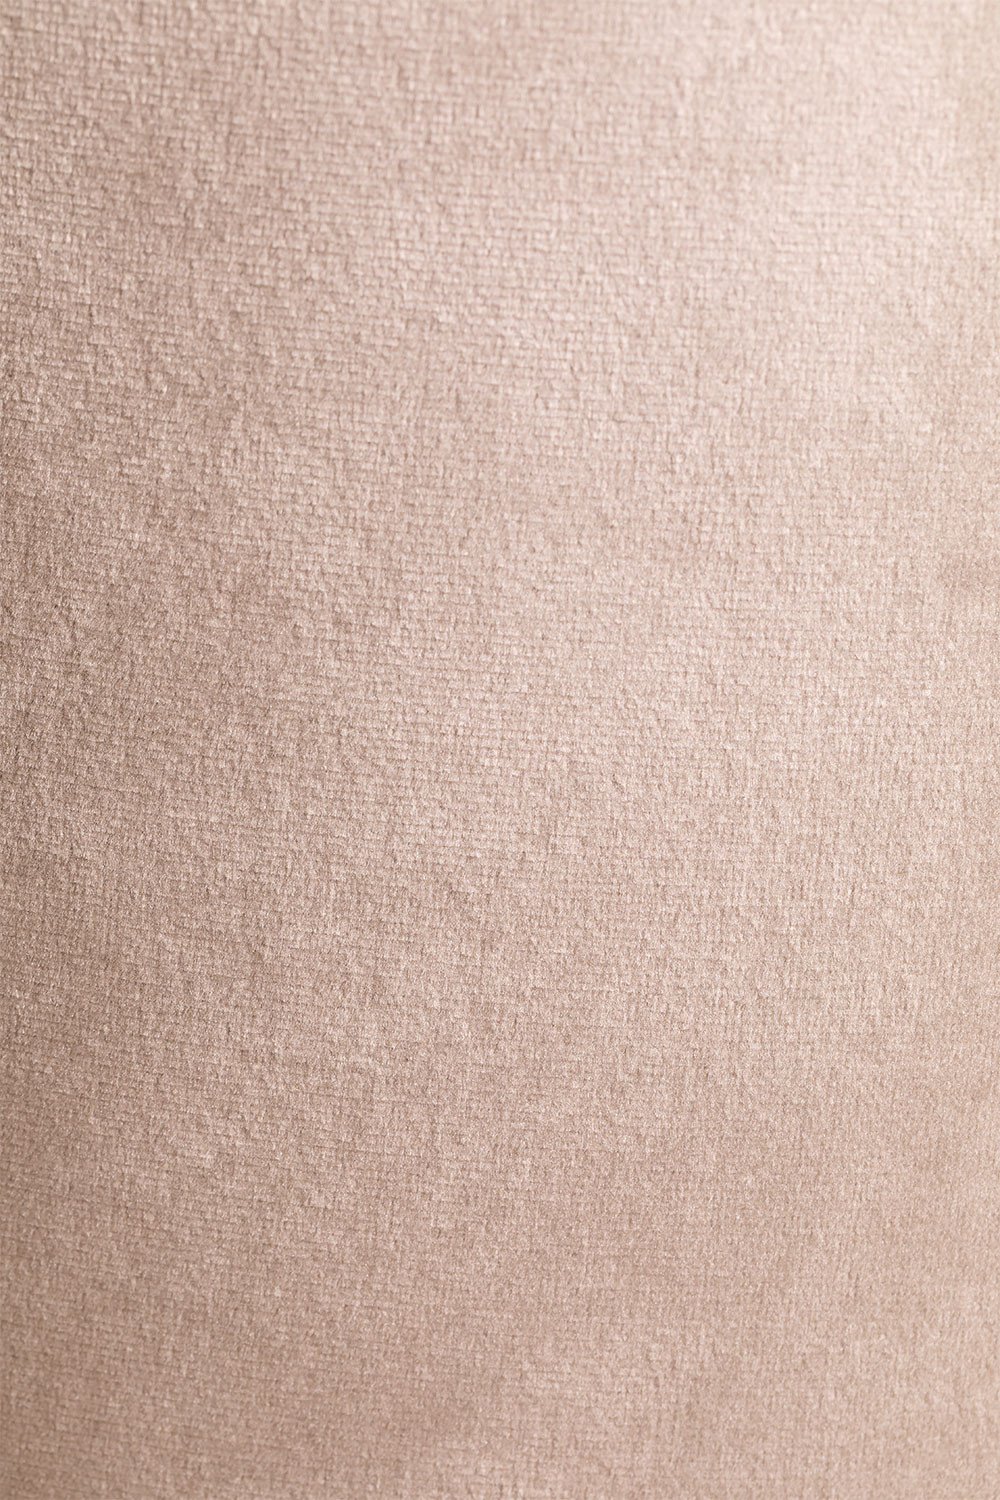 Taburete Alto en Terciopelo (77 cm) Kana Marrón Trigo Madera Oscura -  SKLUM